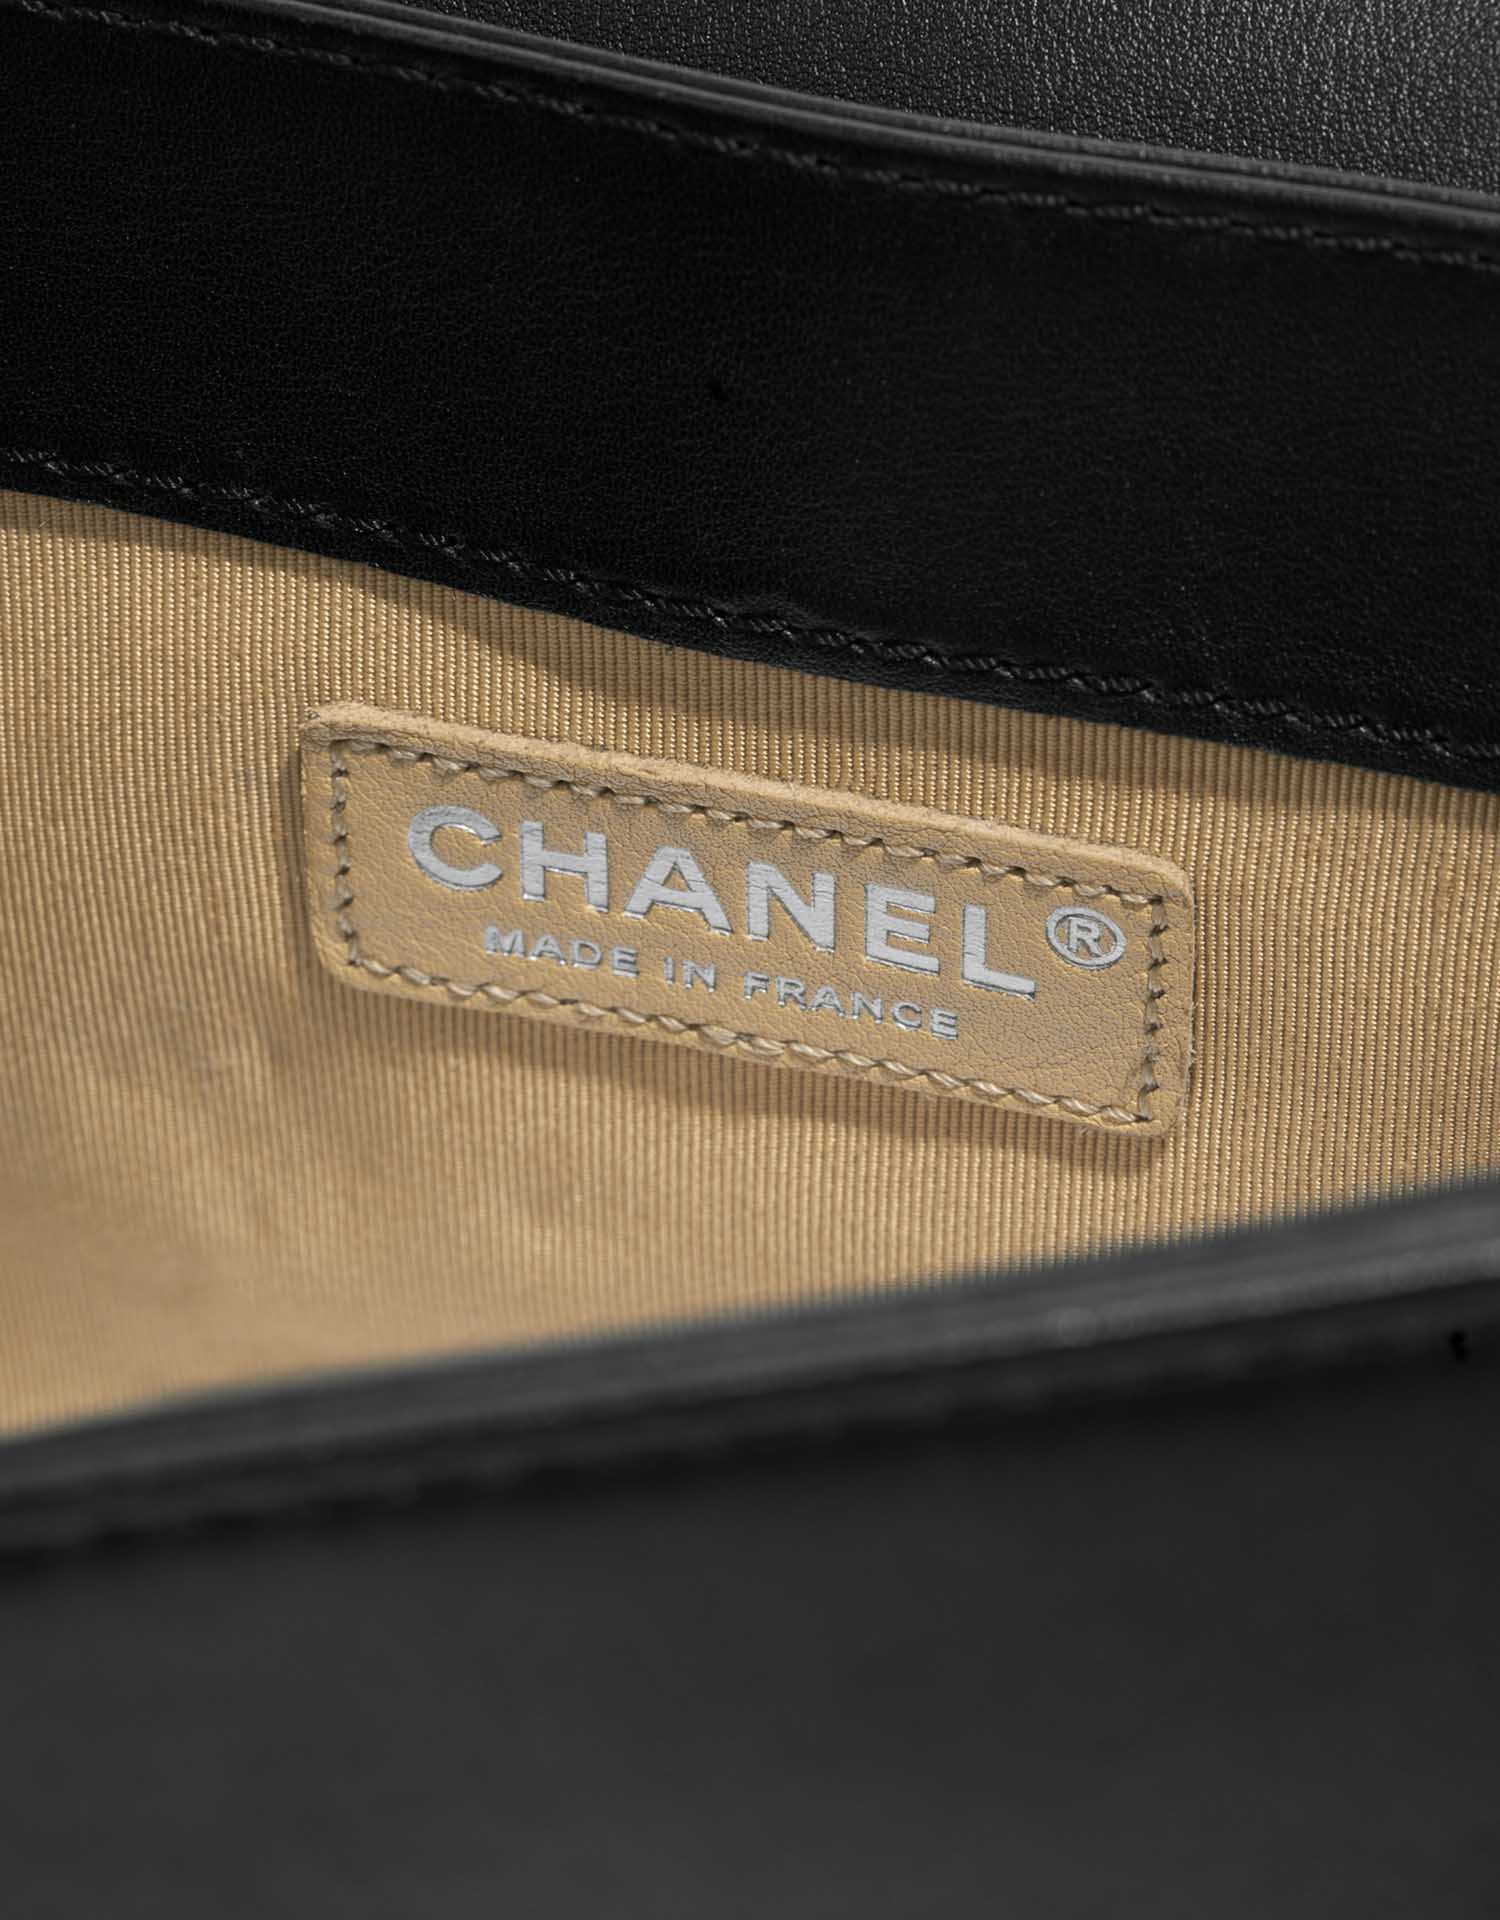 Chanel Boy Large Schwarz-Beige Logo | Verkaufen Sie Ihre Designer-Tasche auf Saclab.com